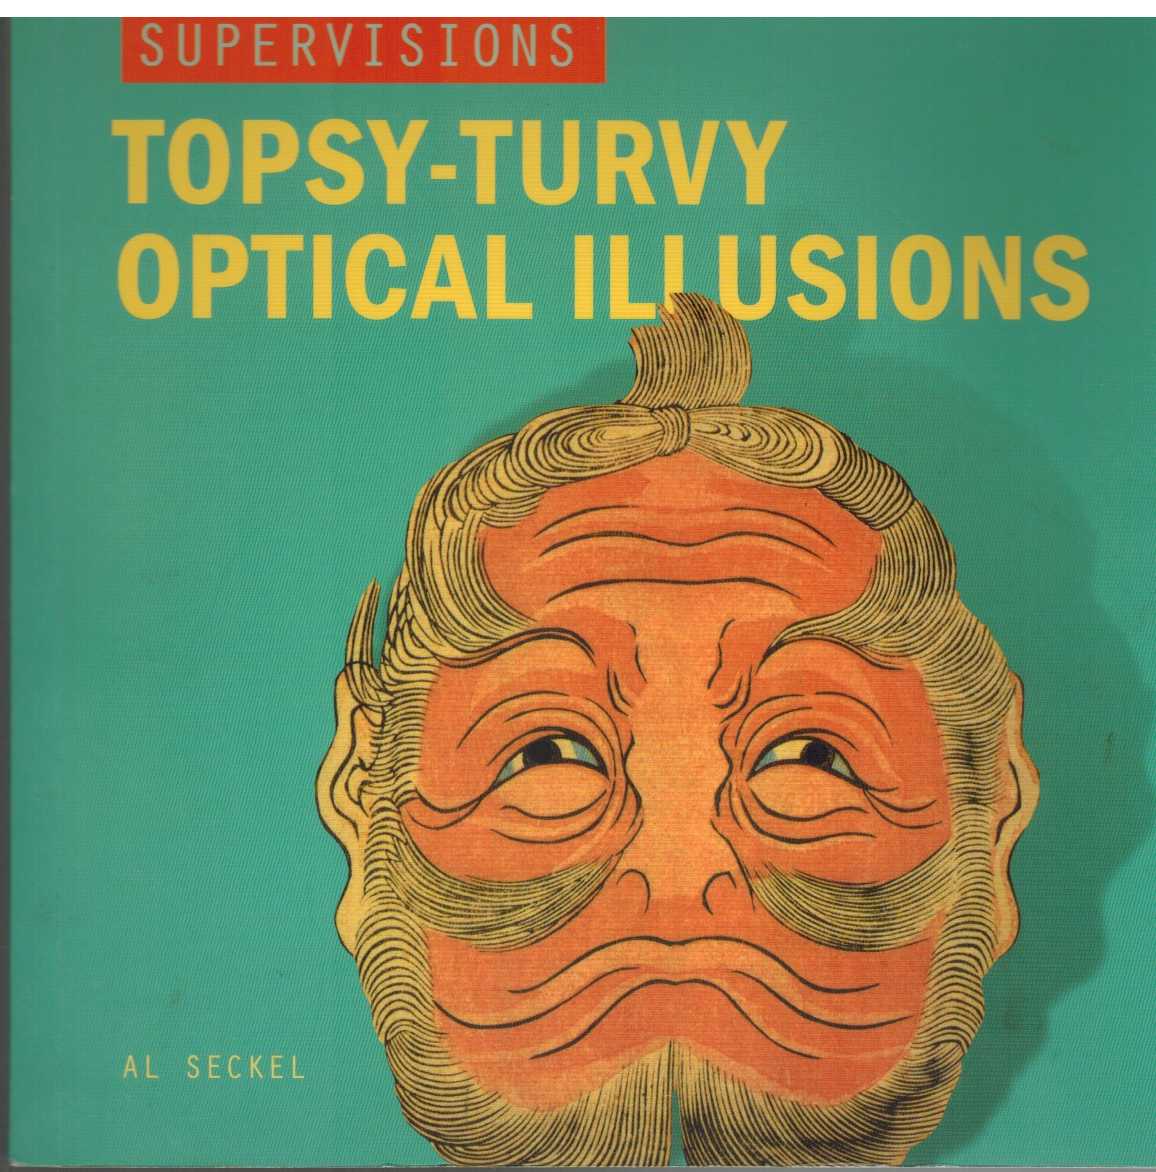 Seckel, Al - SUPERVISIONS Topsy-Turvy Optical Illusions